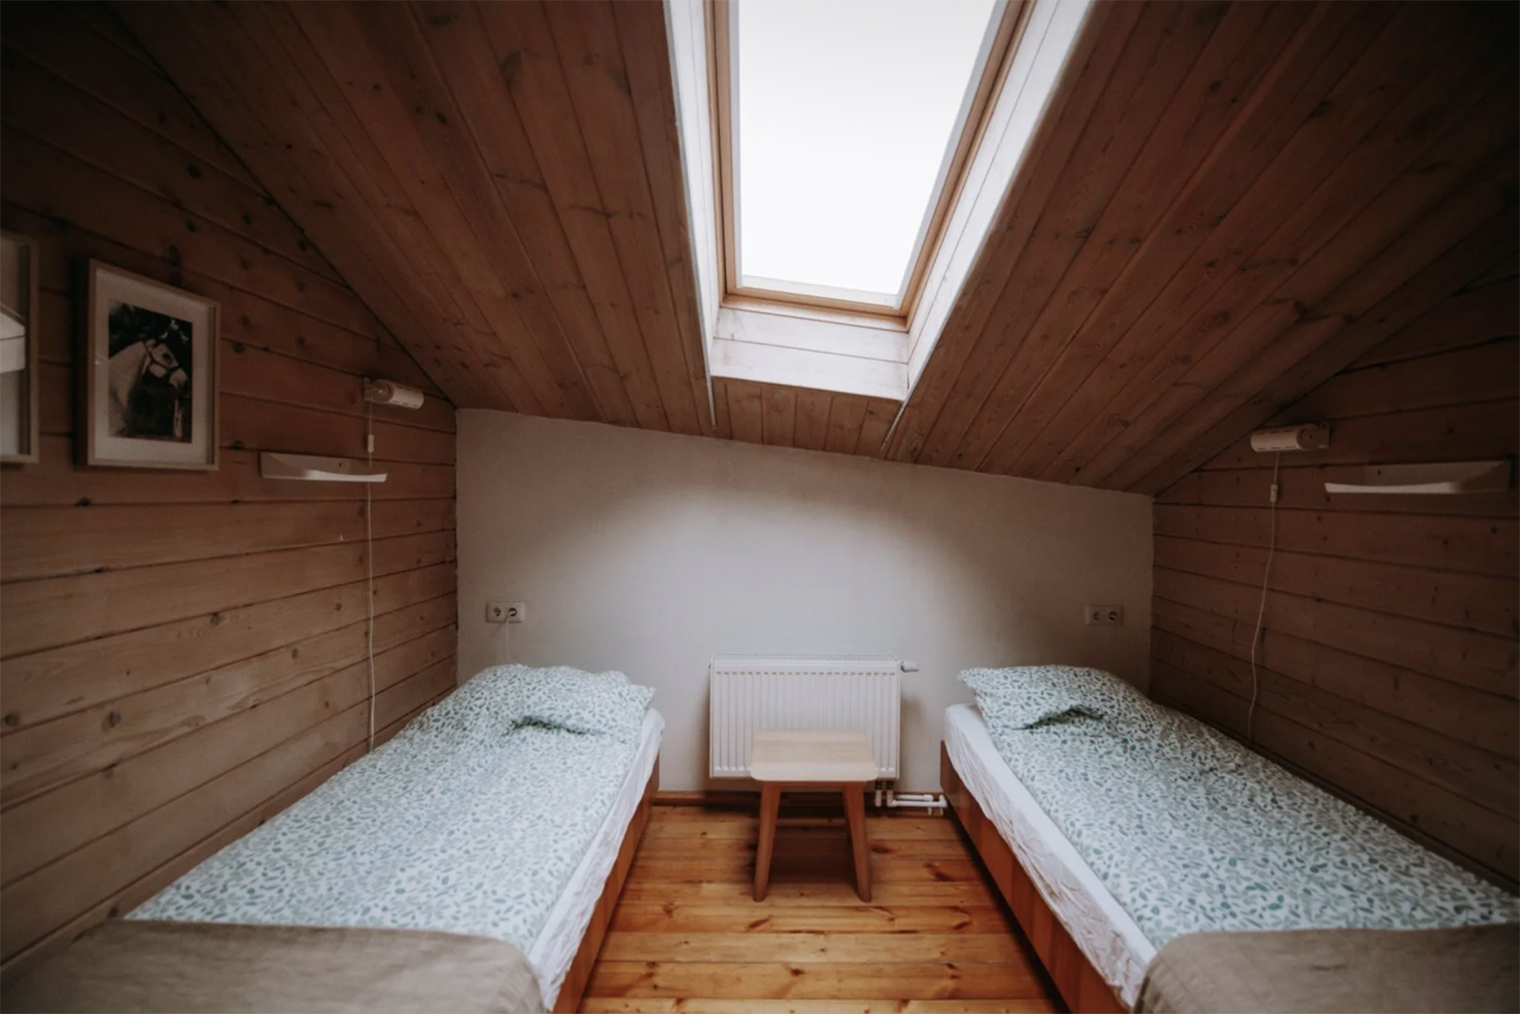 На фото две кровати, остальные не видно, но в номерах живут 4⁠—⁠5 человек. Источник: 20⁠-⁠30camp.ru